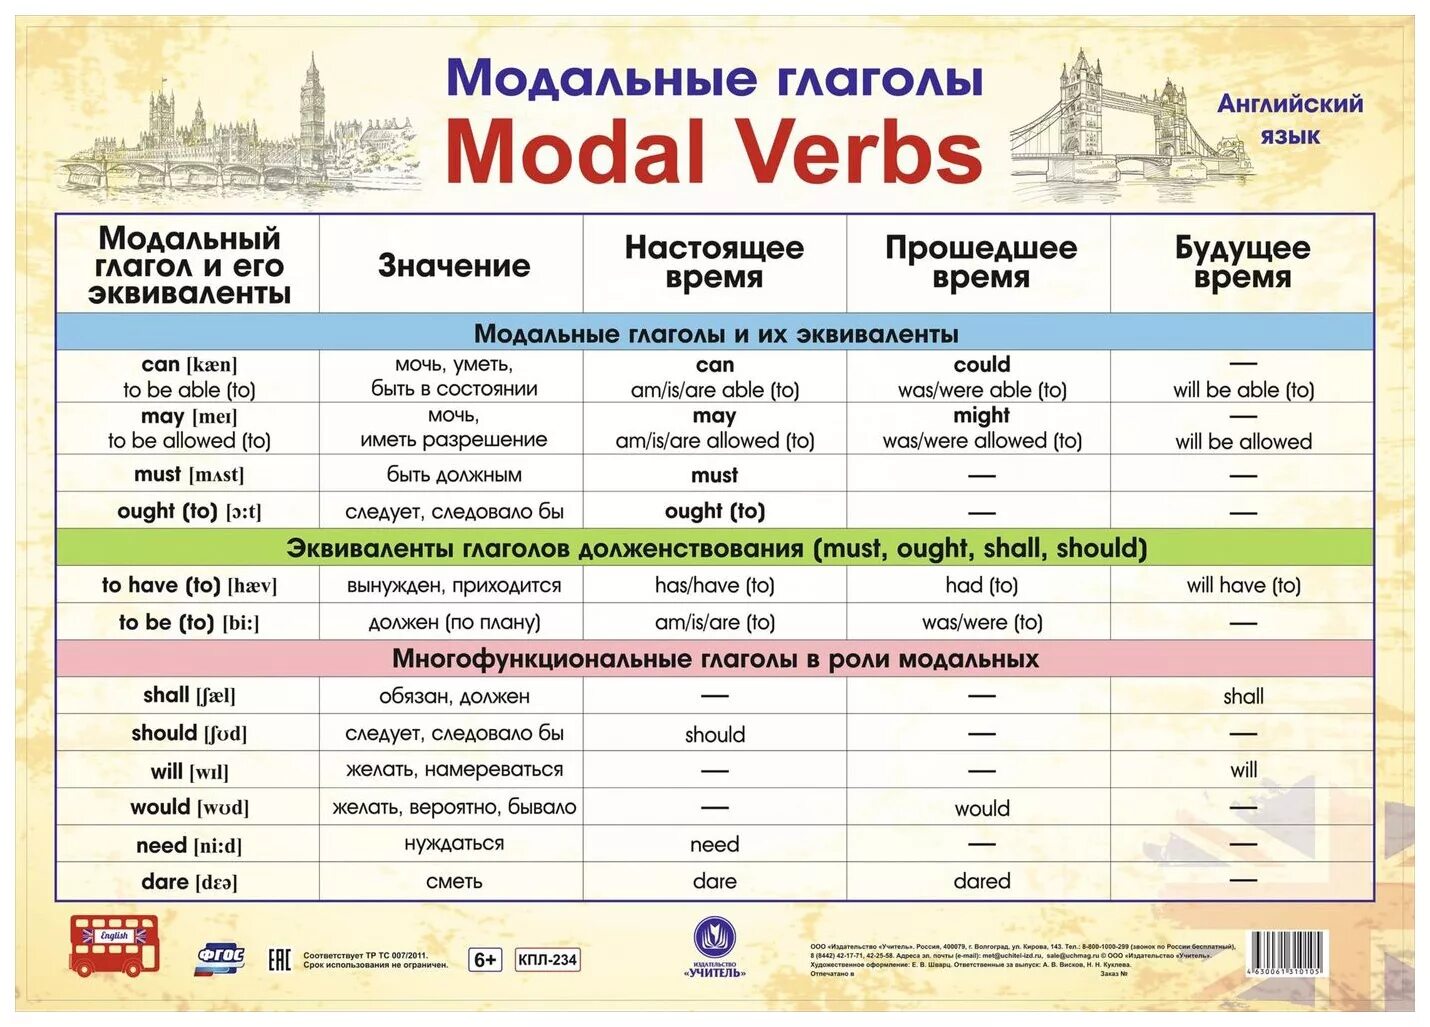 Форма глагола can в английском. Модальные глаголы в английском языке таблица. Модальные глаголы англ яз таблица. Модальные гляголы в анг. Можальные гдаголы втанглийсуом языке.